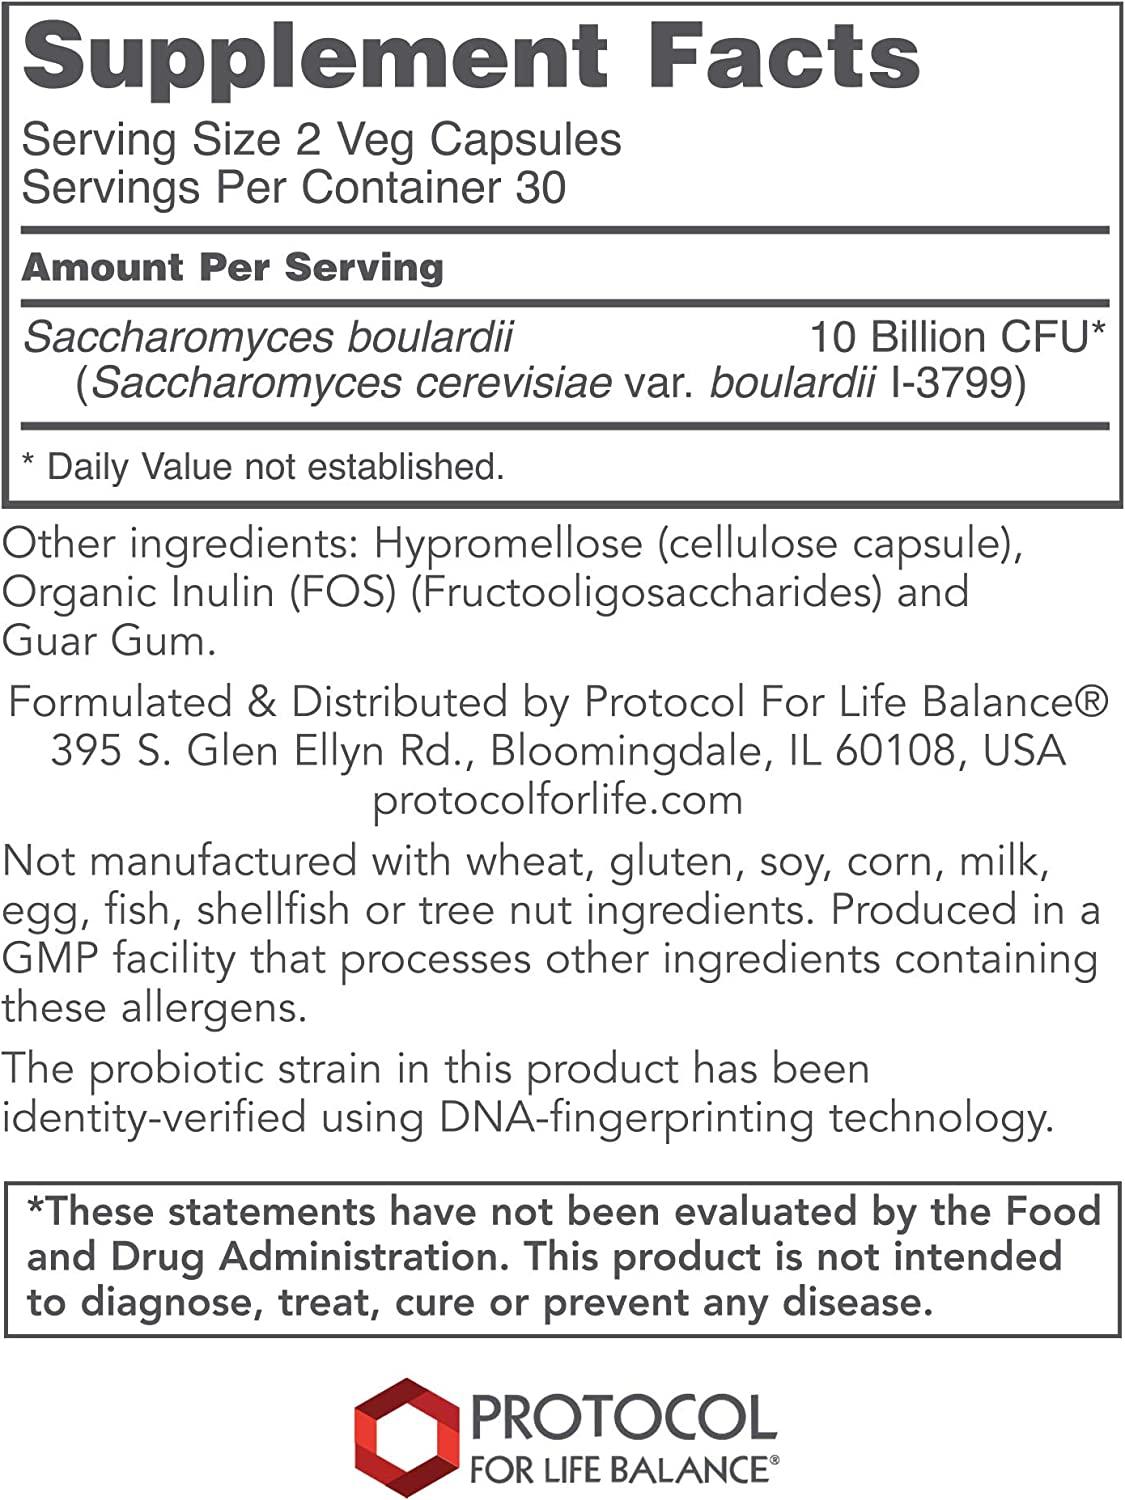 Saccharomyces Boulardii (Protocol for Life Balance)